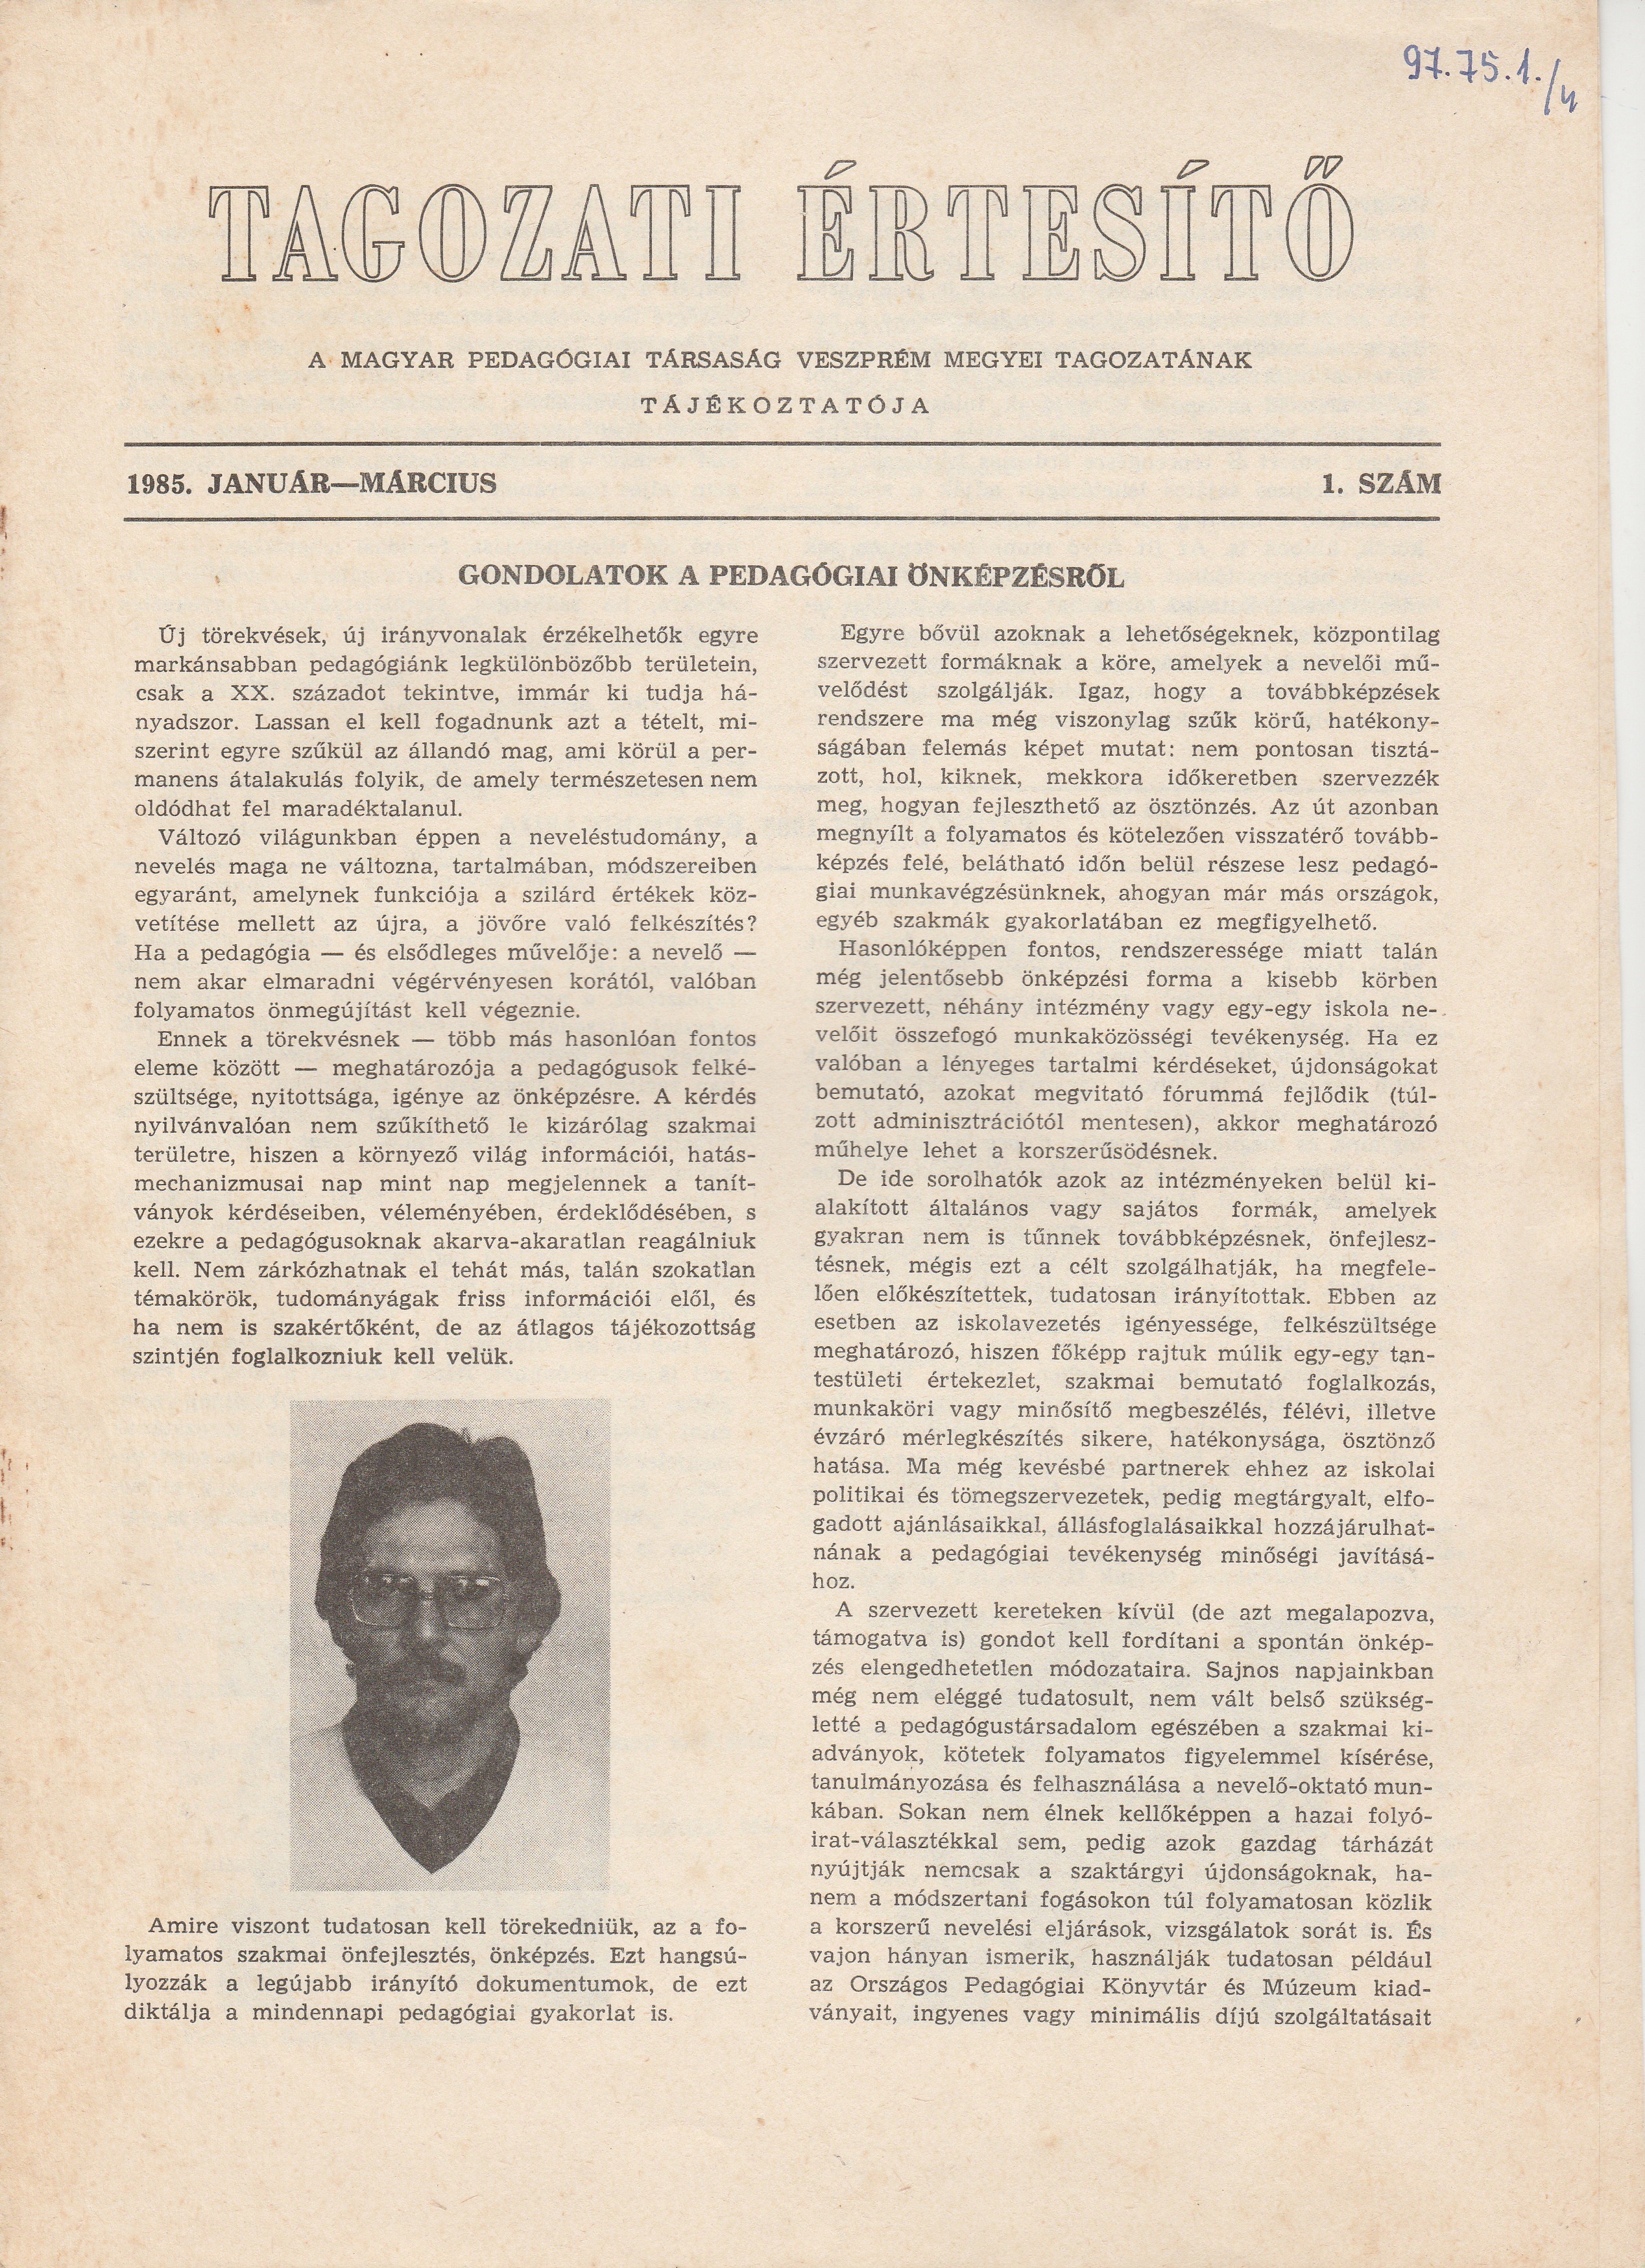 Tagozati Értesítő 1985/1. szám (Tapolcai Városi Múzeum CC BY-NC-SA)